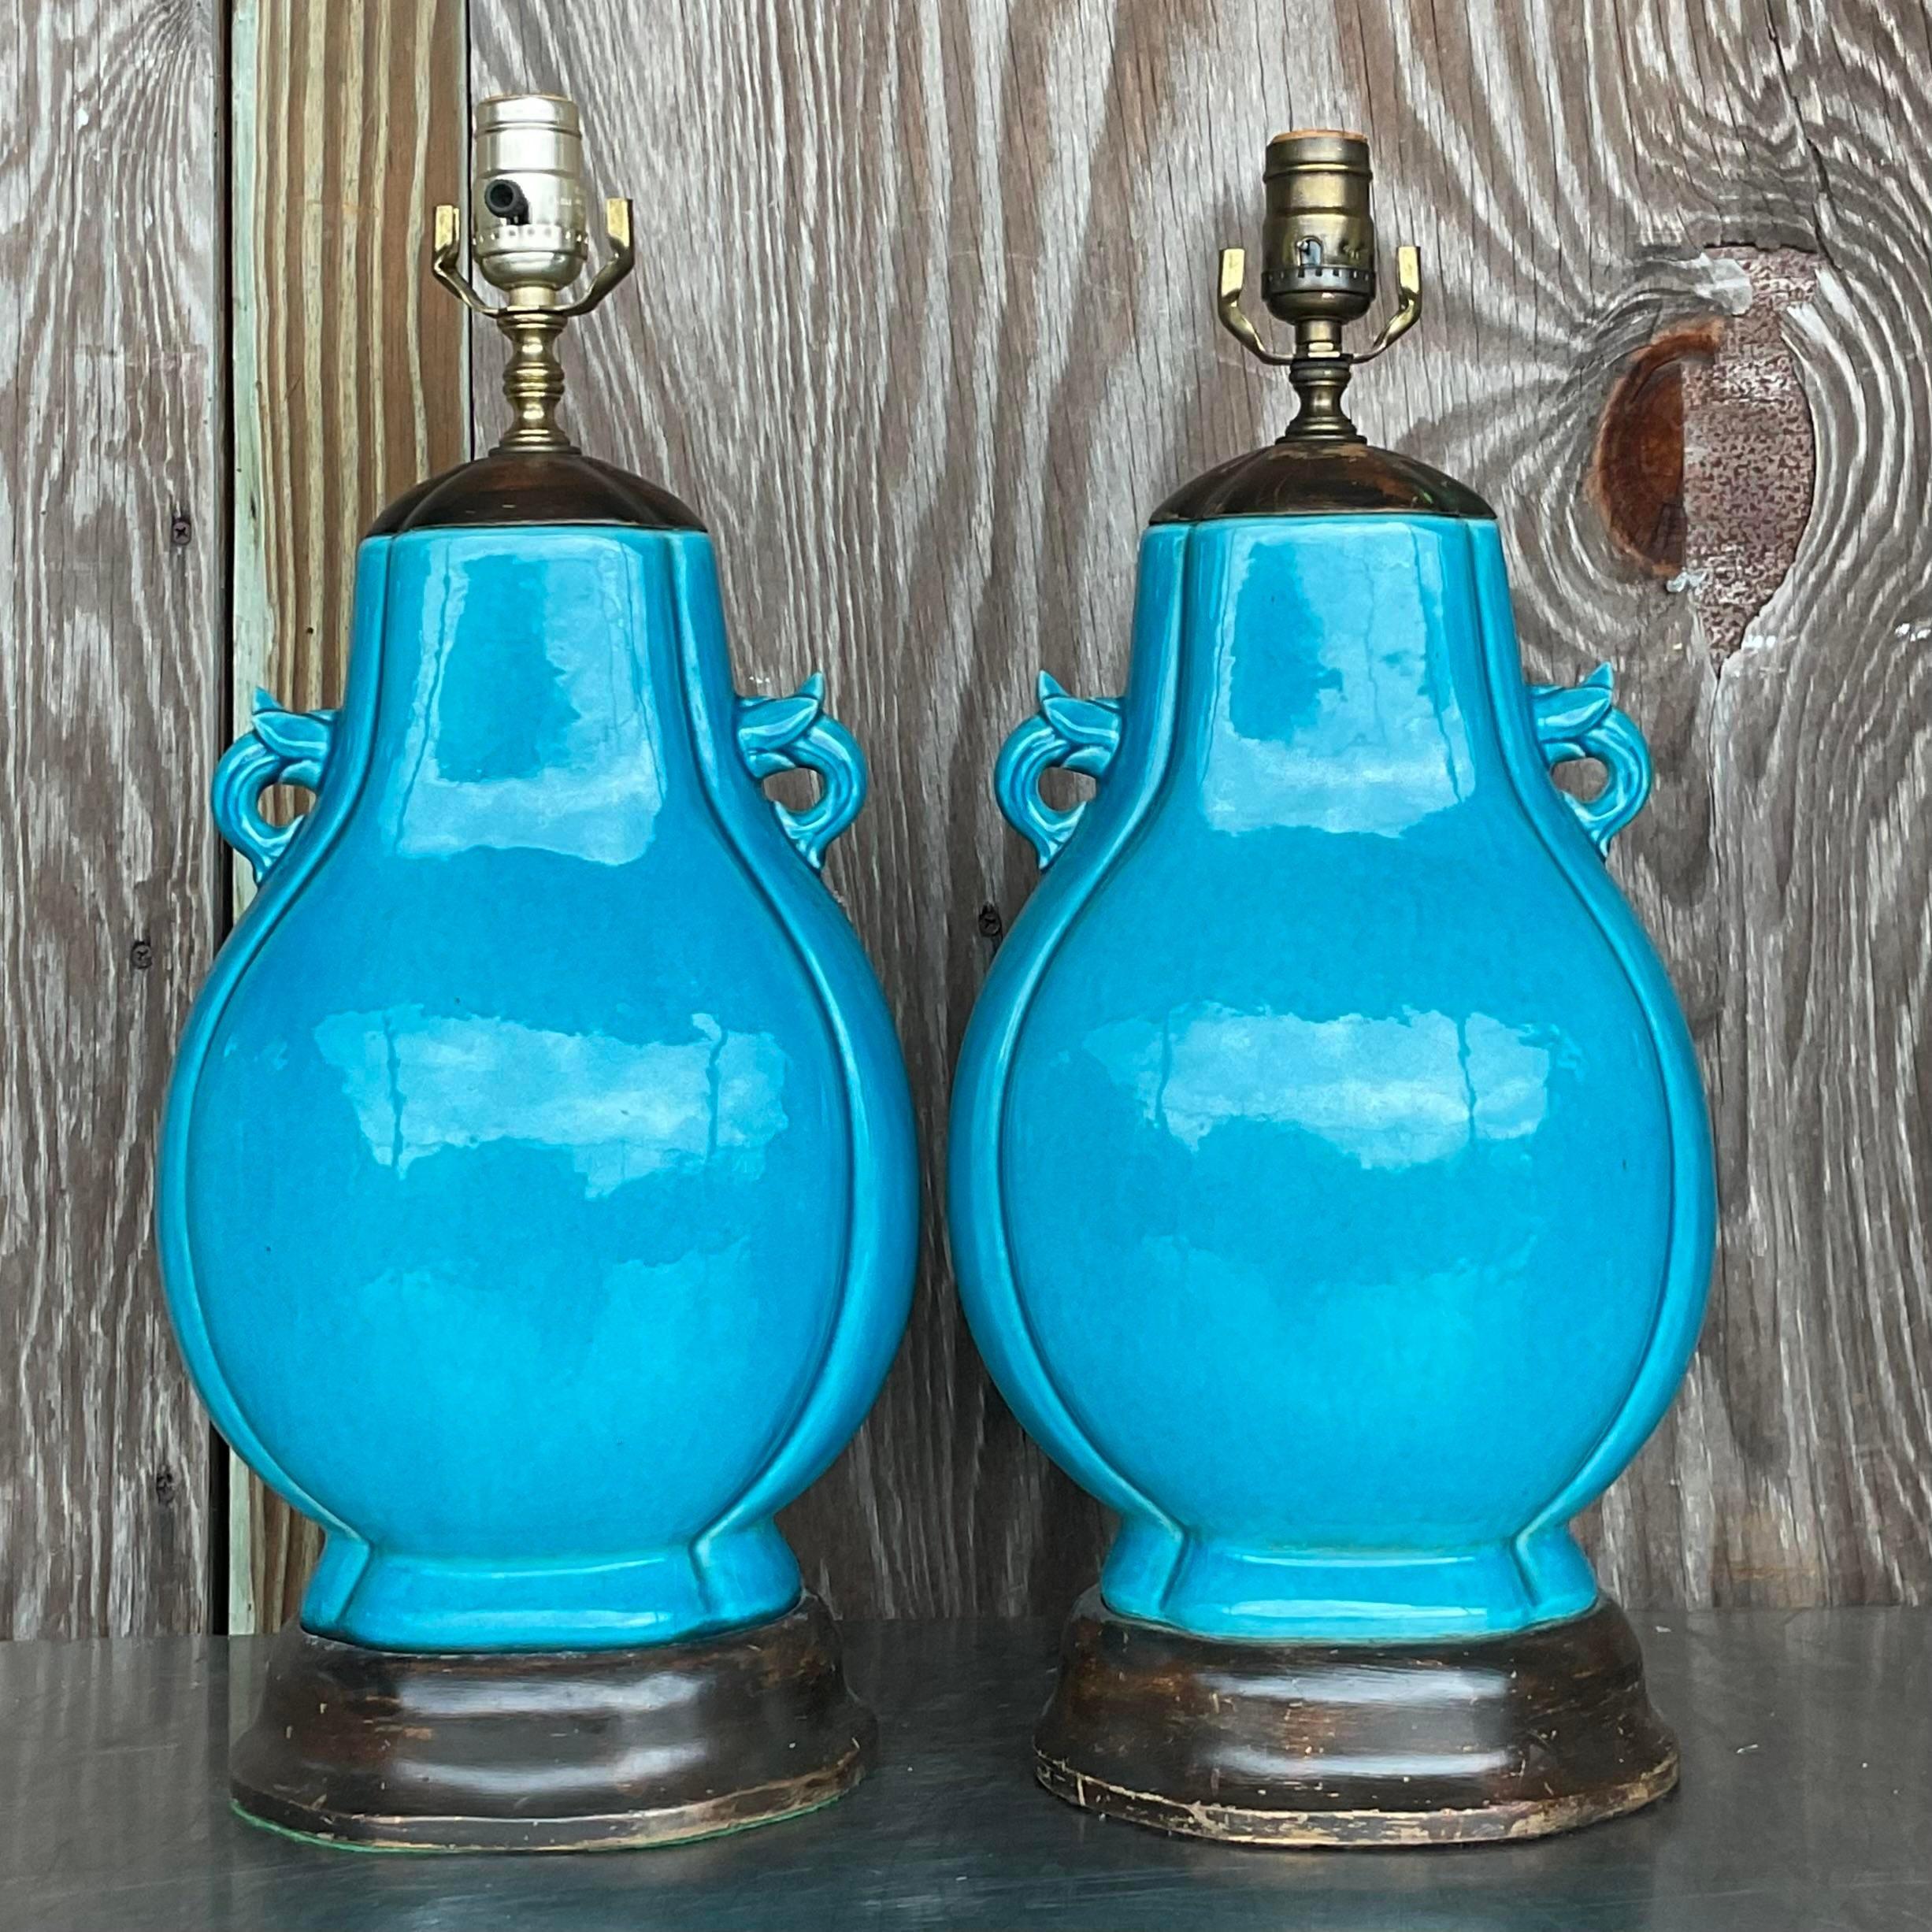 Une paire spectaculaire de lampes de table Boho vintage. Un magnifique bleu turquoise vif dans une finition en céramique émaillée. Ils reposent sur des socles en bois ébonisé. Acquis d'une succession de Palm Beach